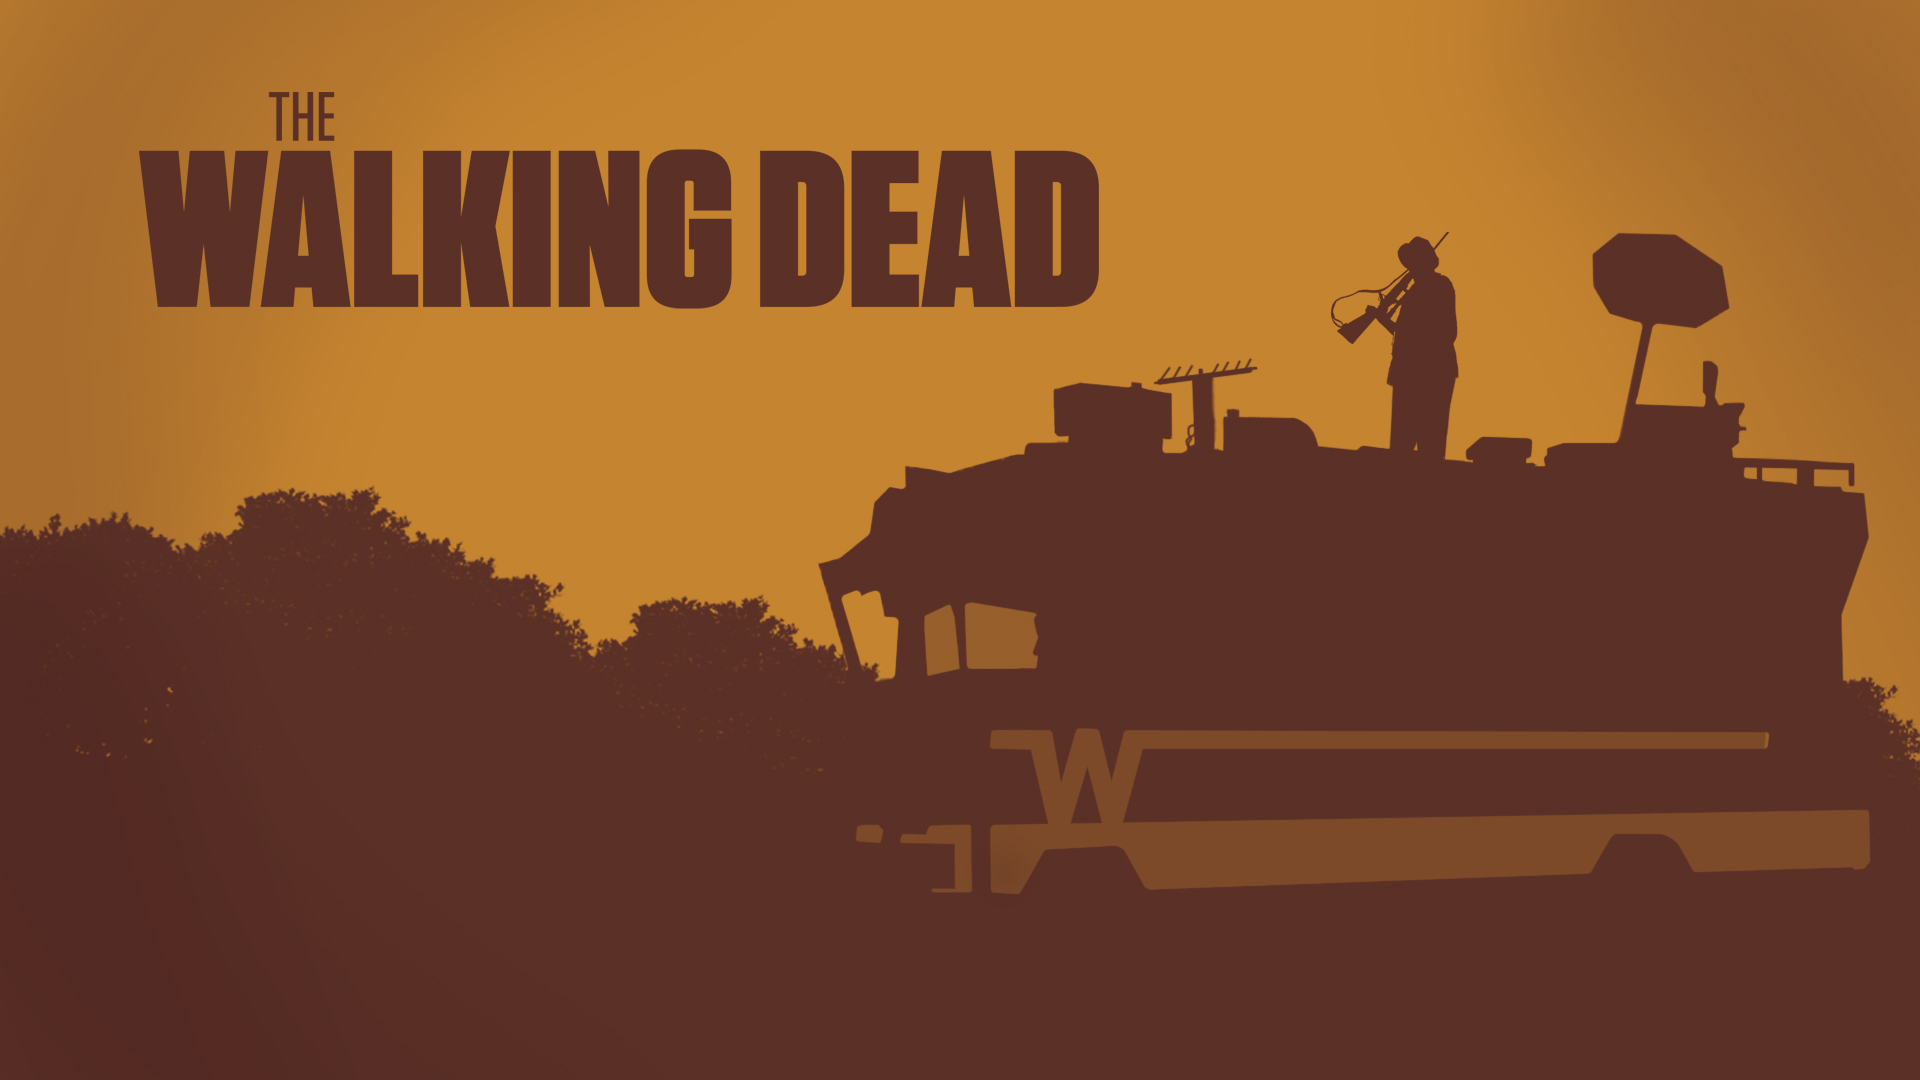 The Walking Dead Wallpaper